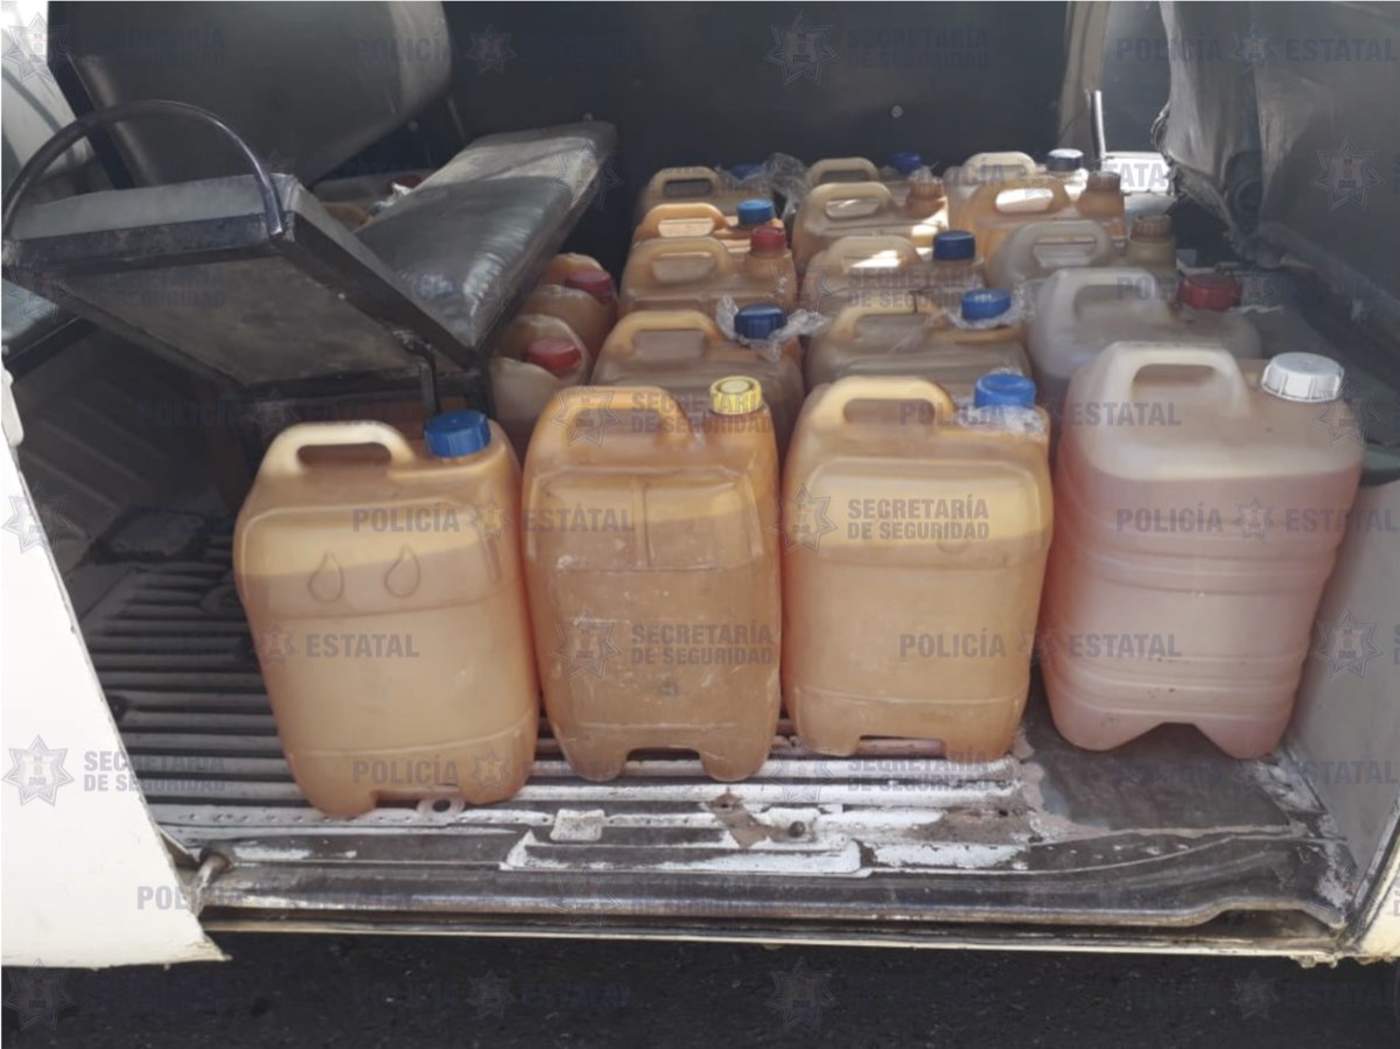 La Secretaría de Seguridad del Estado de México informó sobre la detención en el municipio de Zacualpan de un sujeto que transportaba 430 litros de gasolina. (TWITTER)